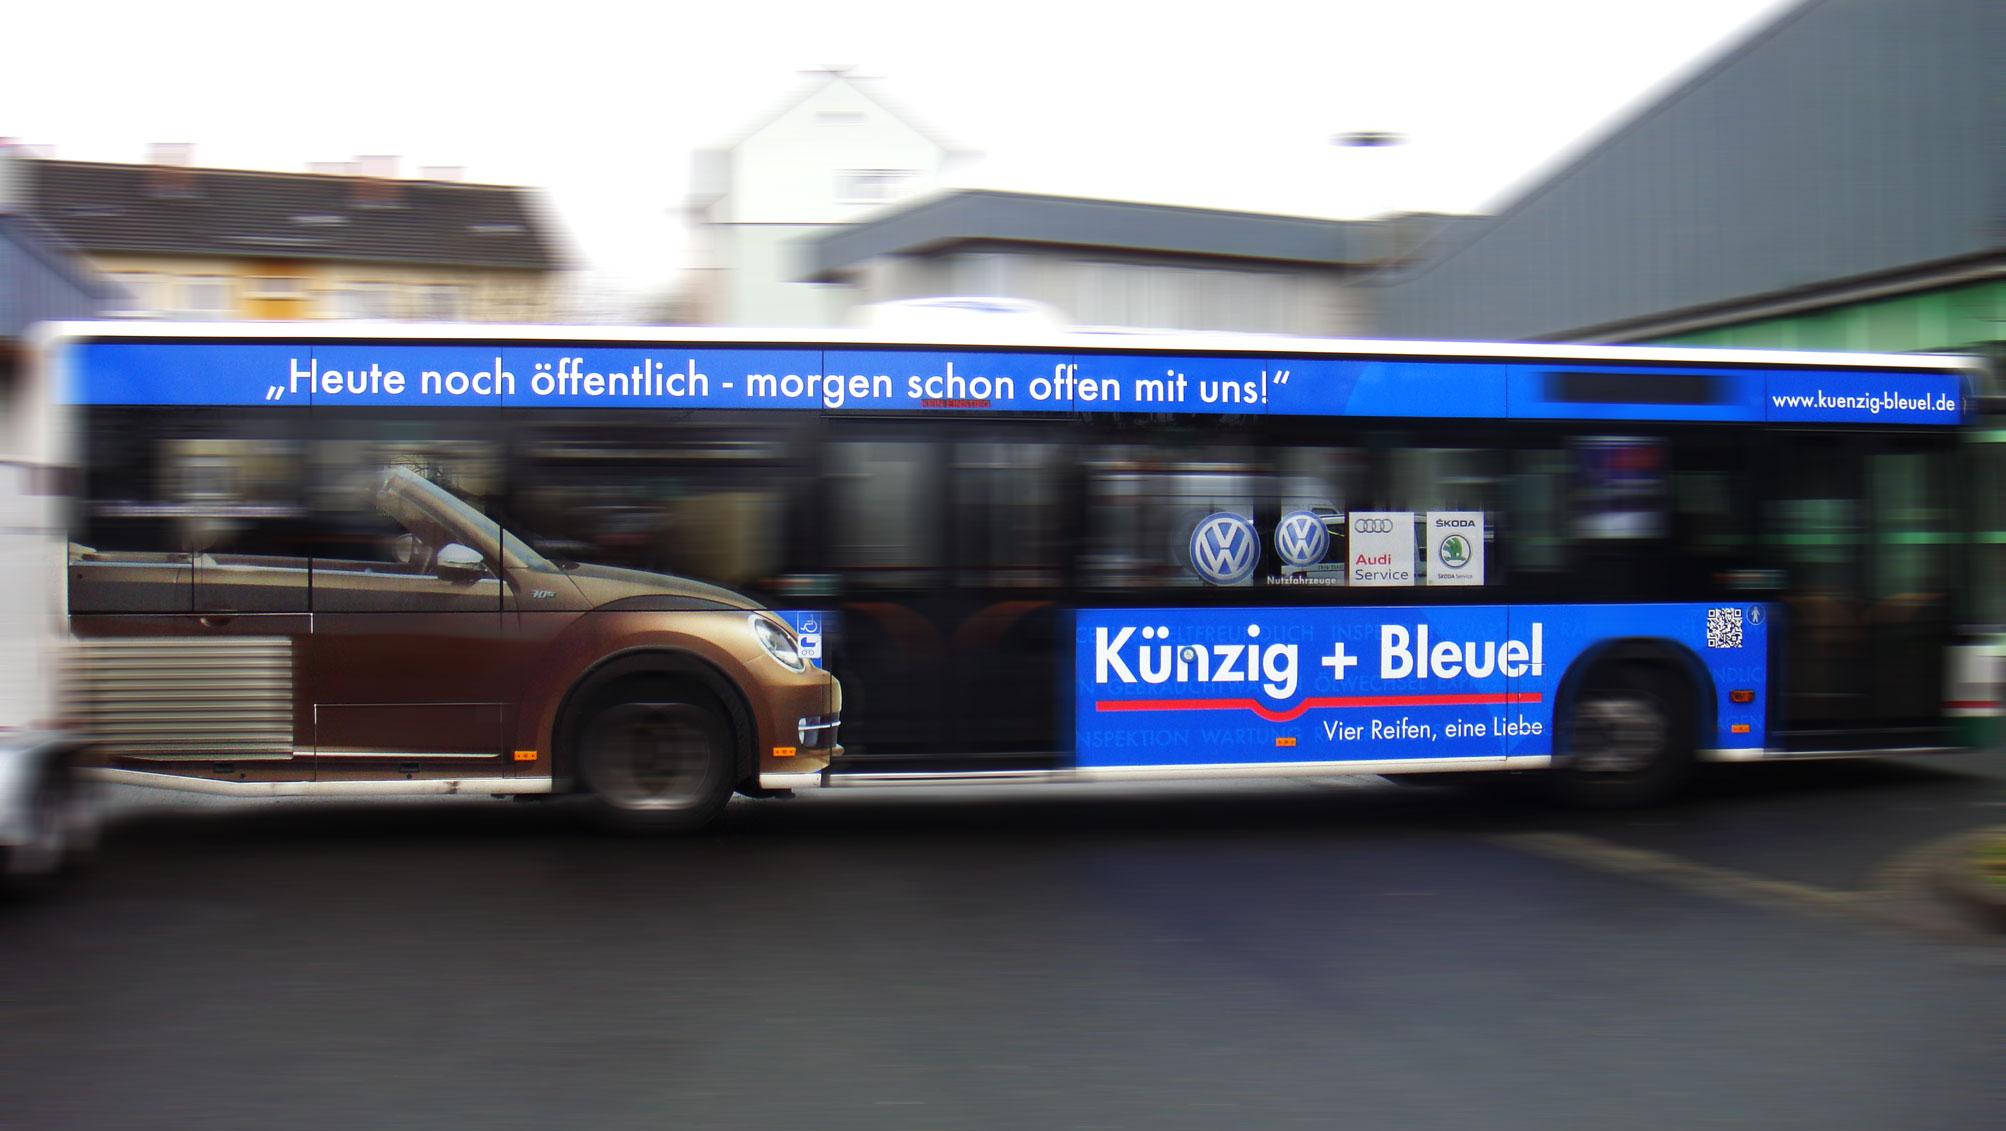 Buswerbung - Künzig & Bleuel - Einstiegsseite